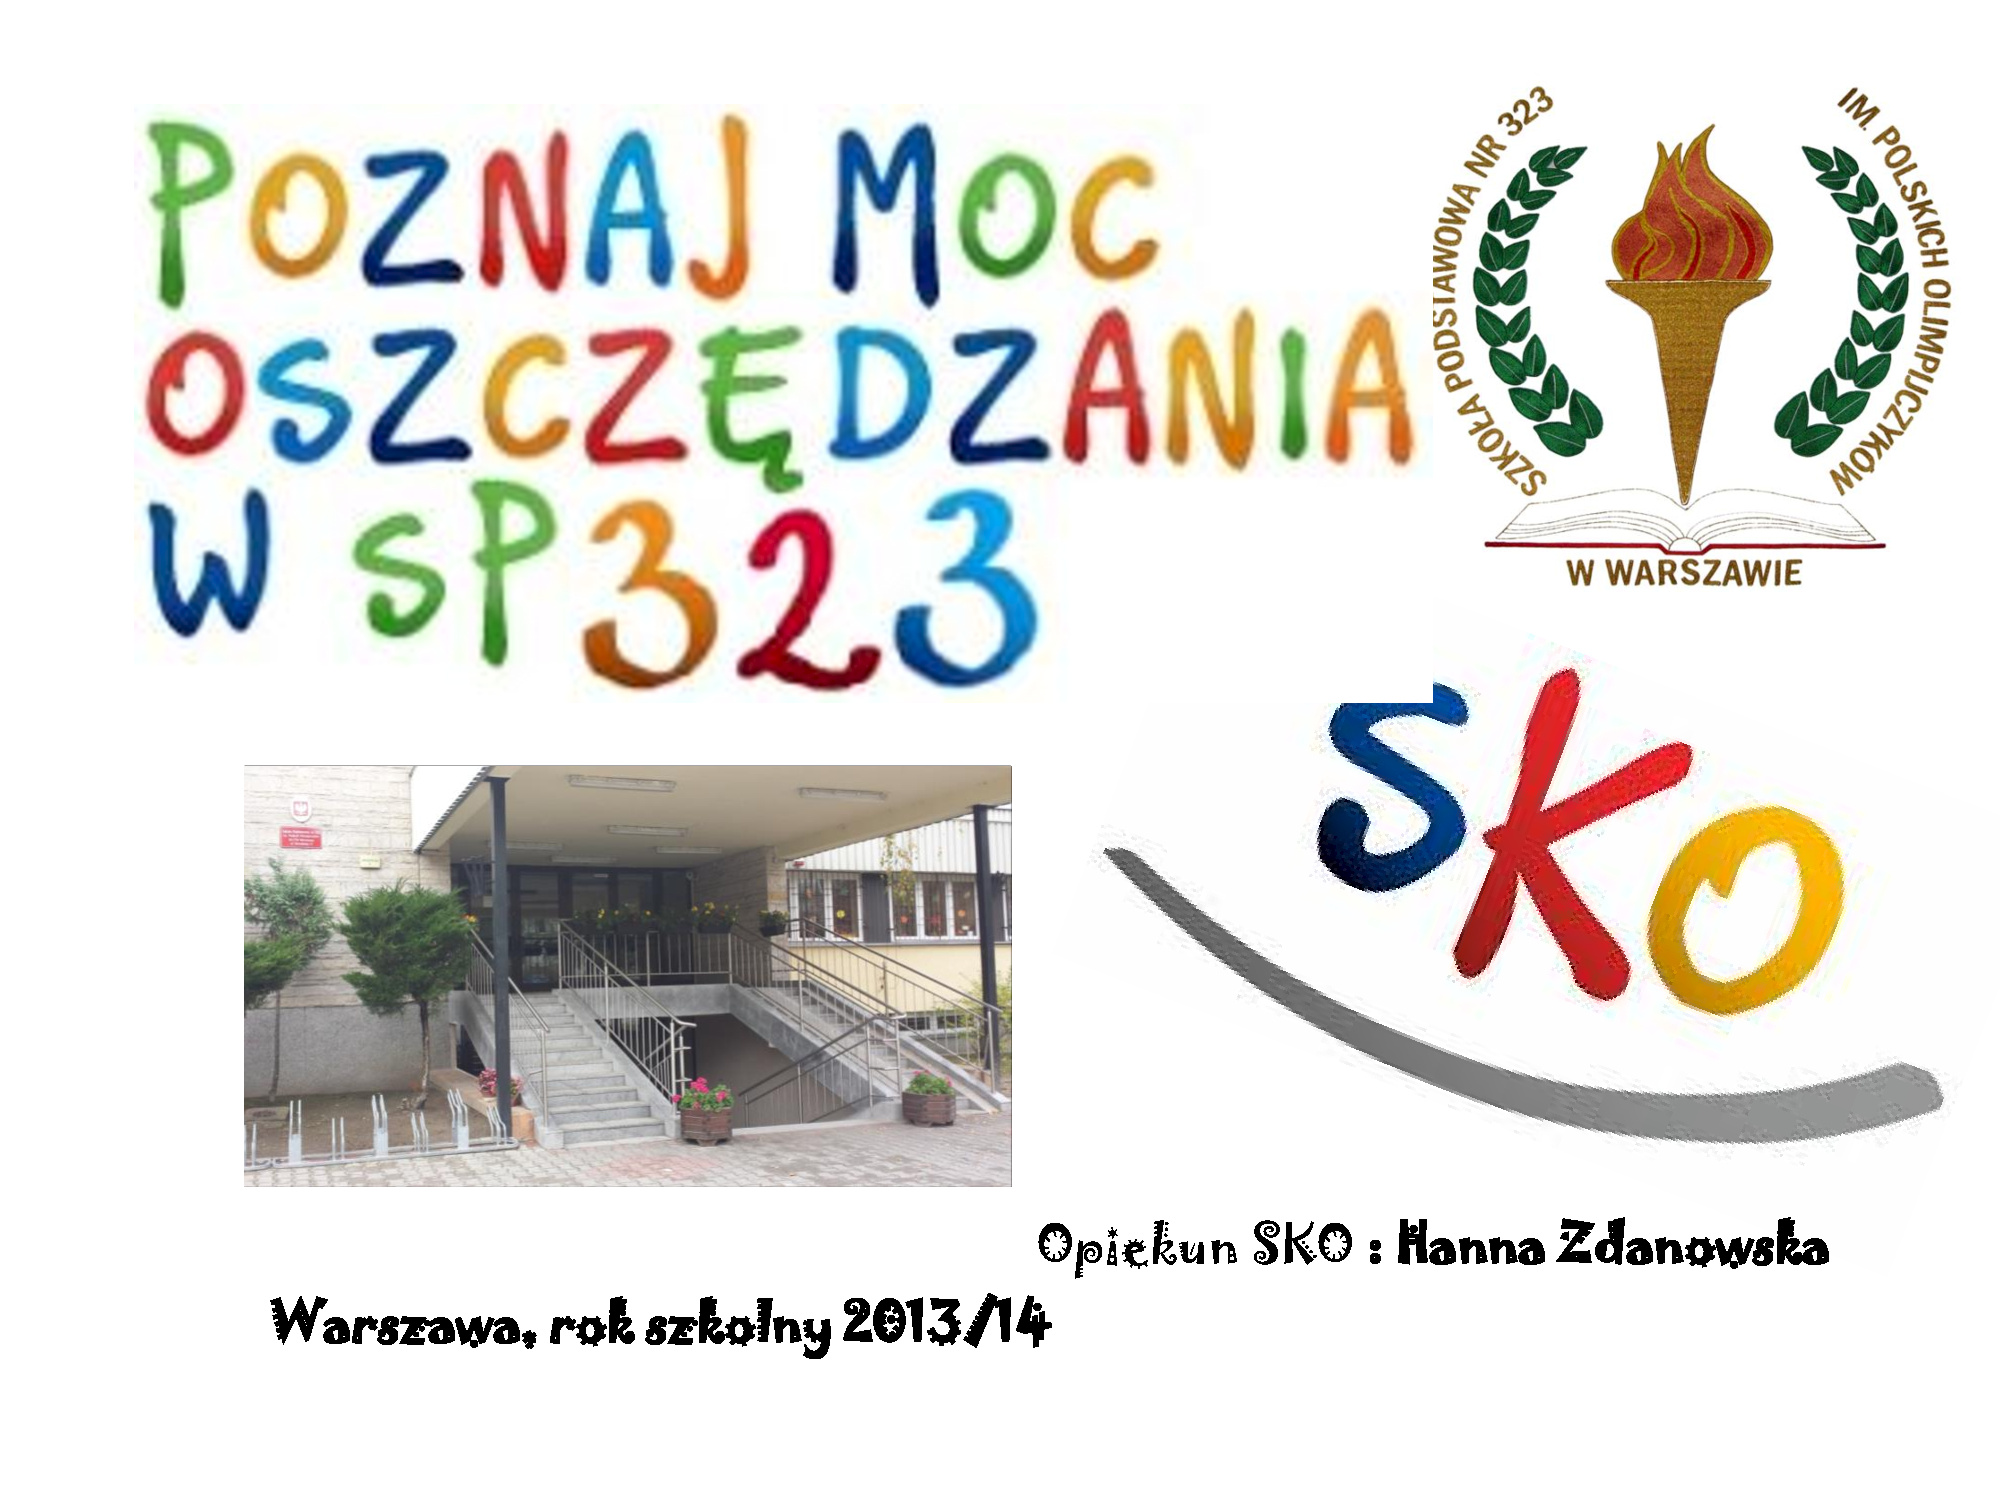 Szkoła Podstawowa Nr 323 im. Polskich Olimpijczyków w Warszawie